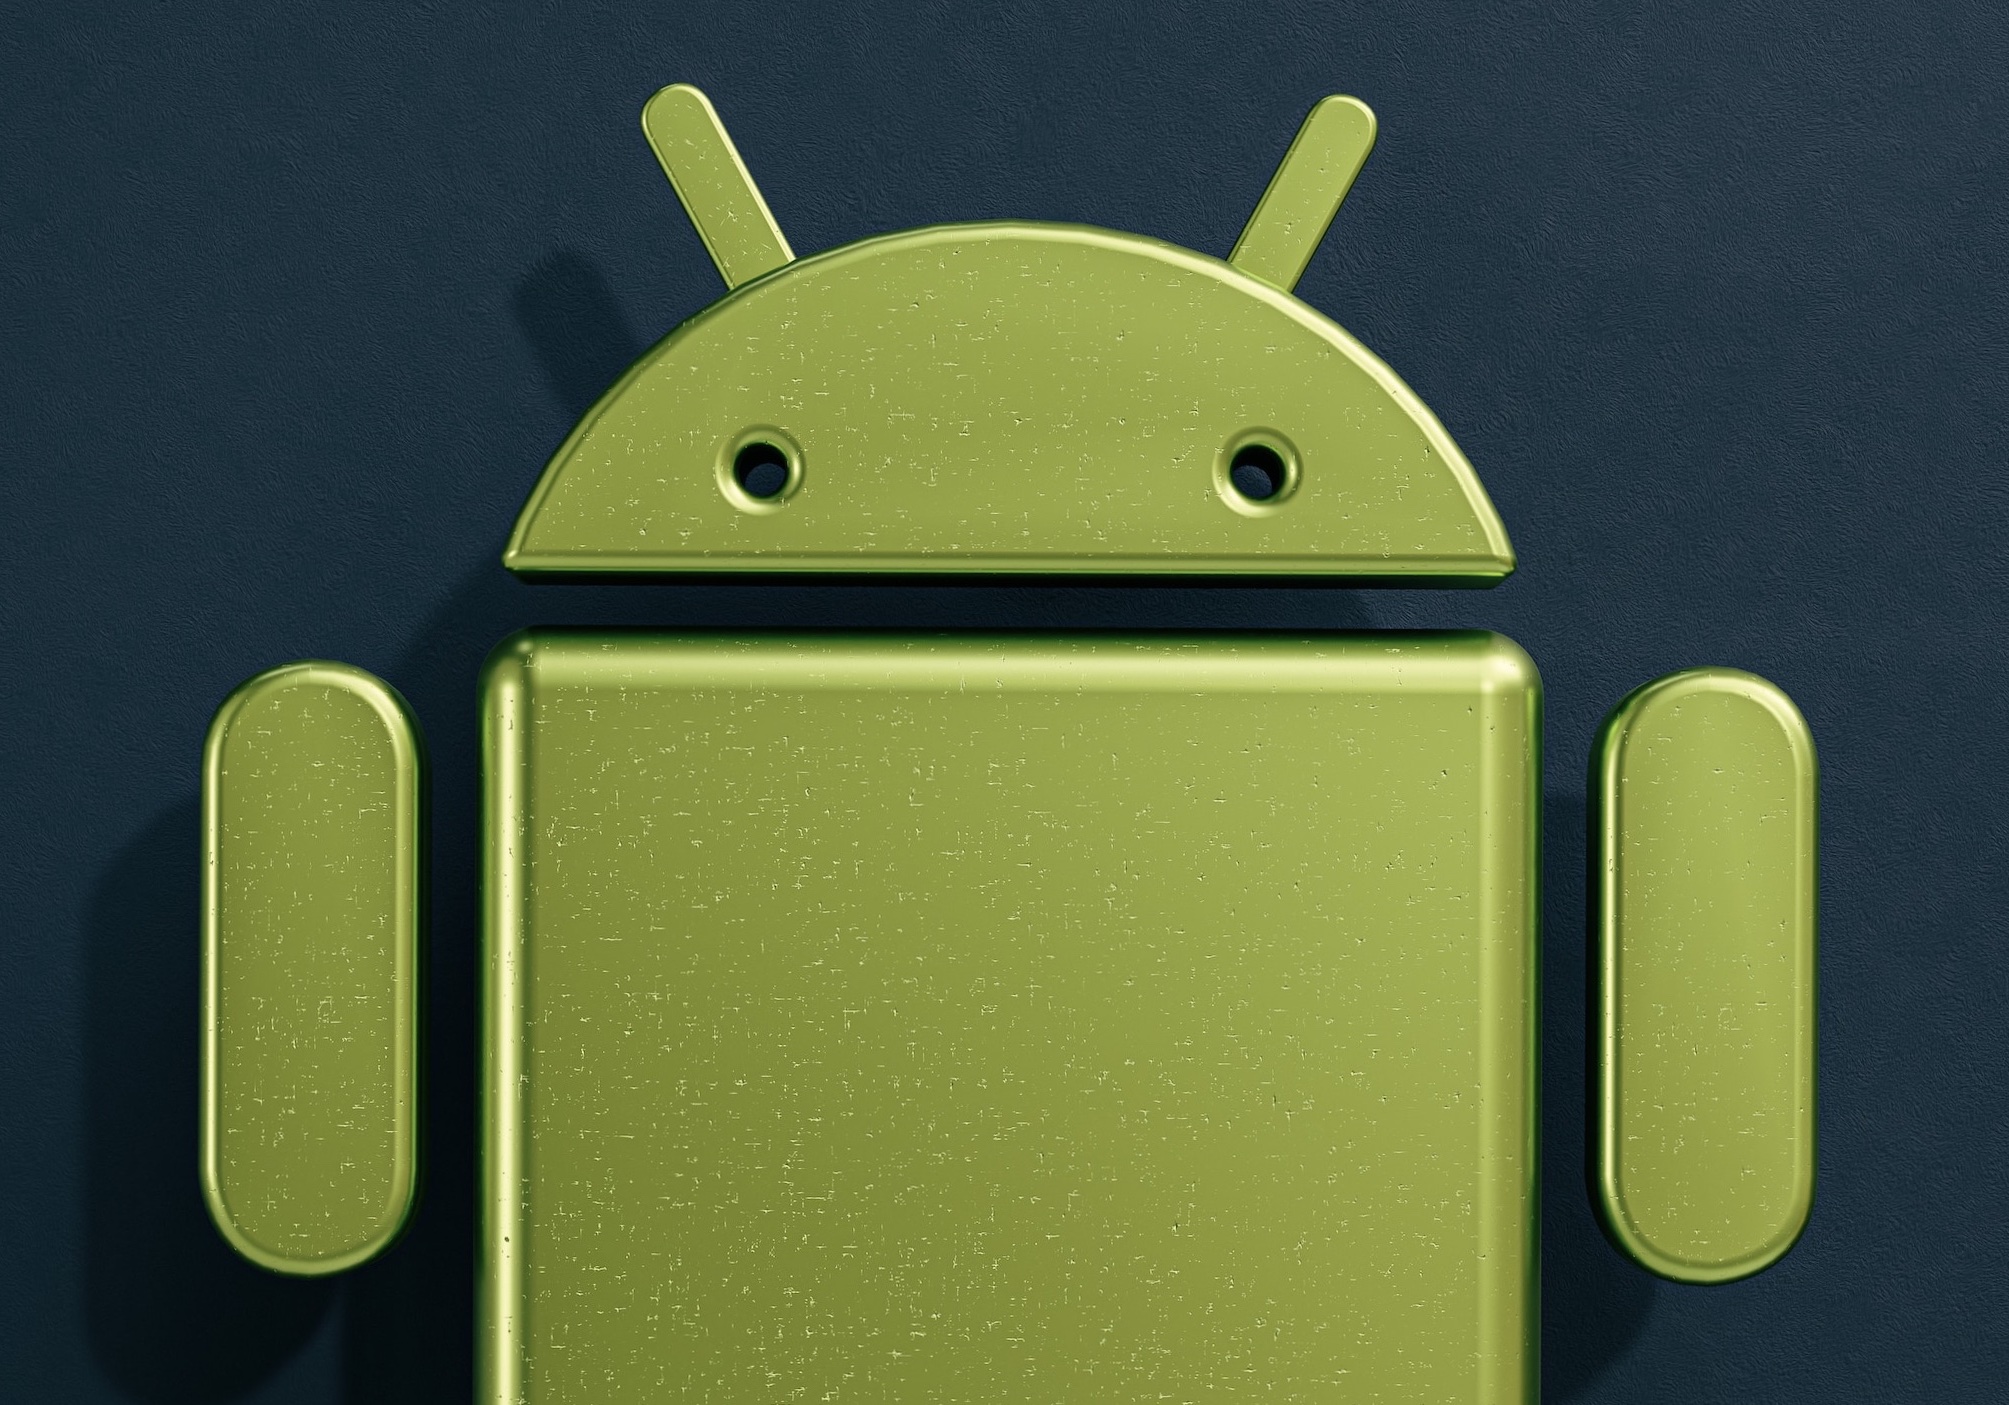 ¡Android lidera la preferencia de usuarios sobre iOS!